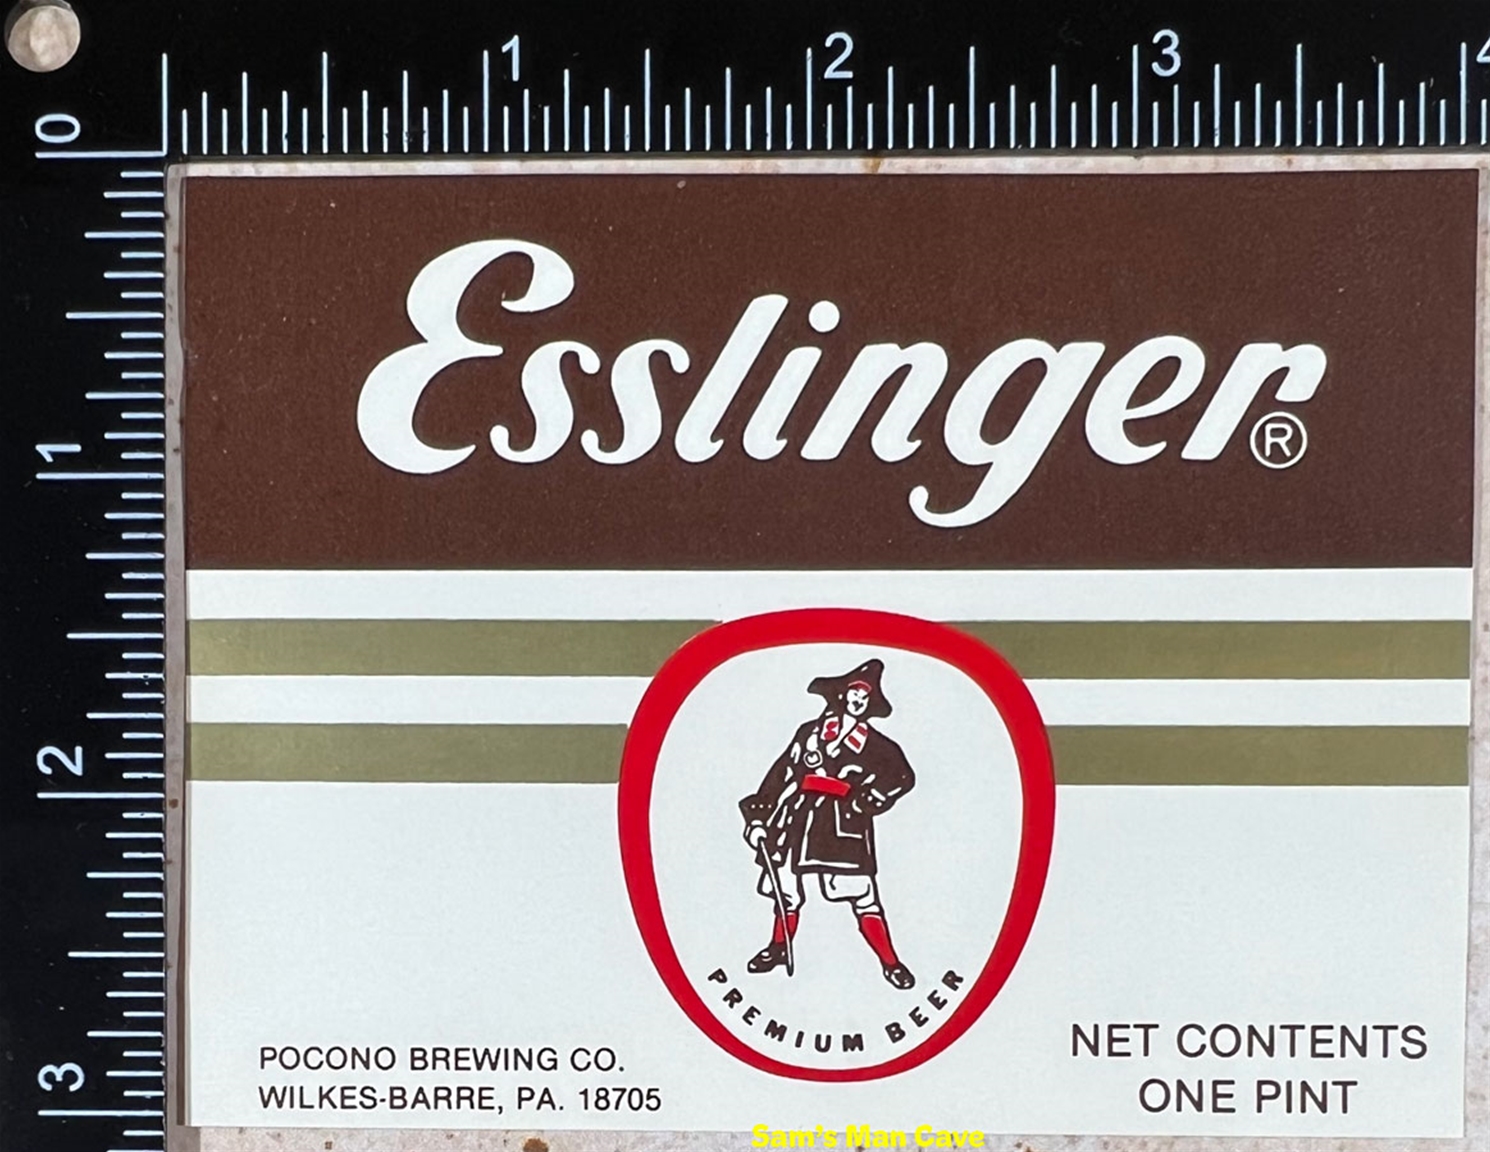 Esslinger Beer Label